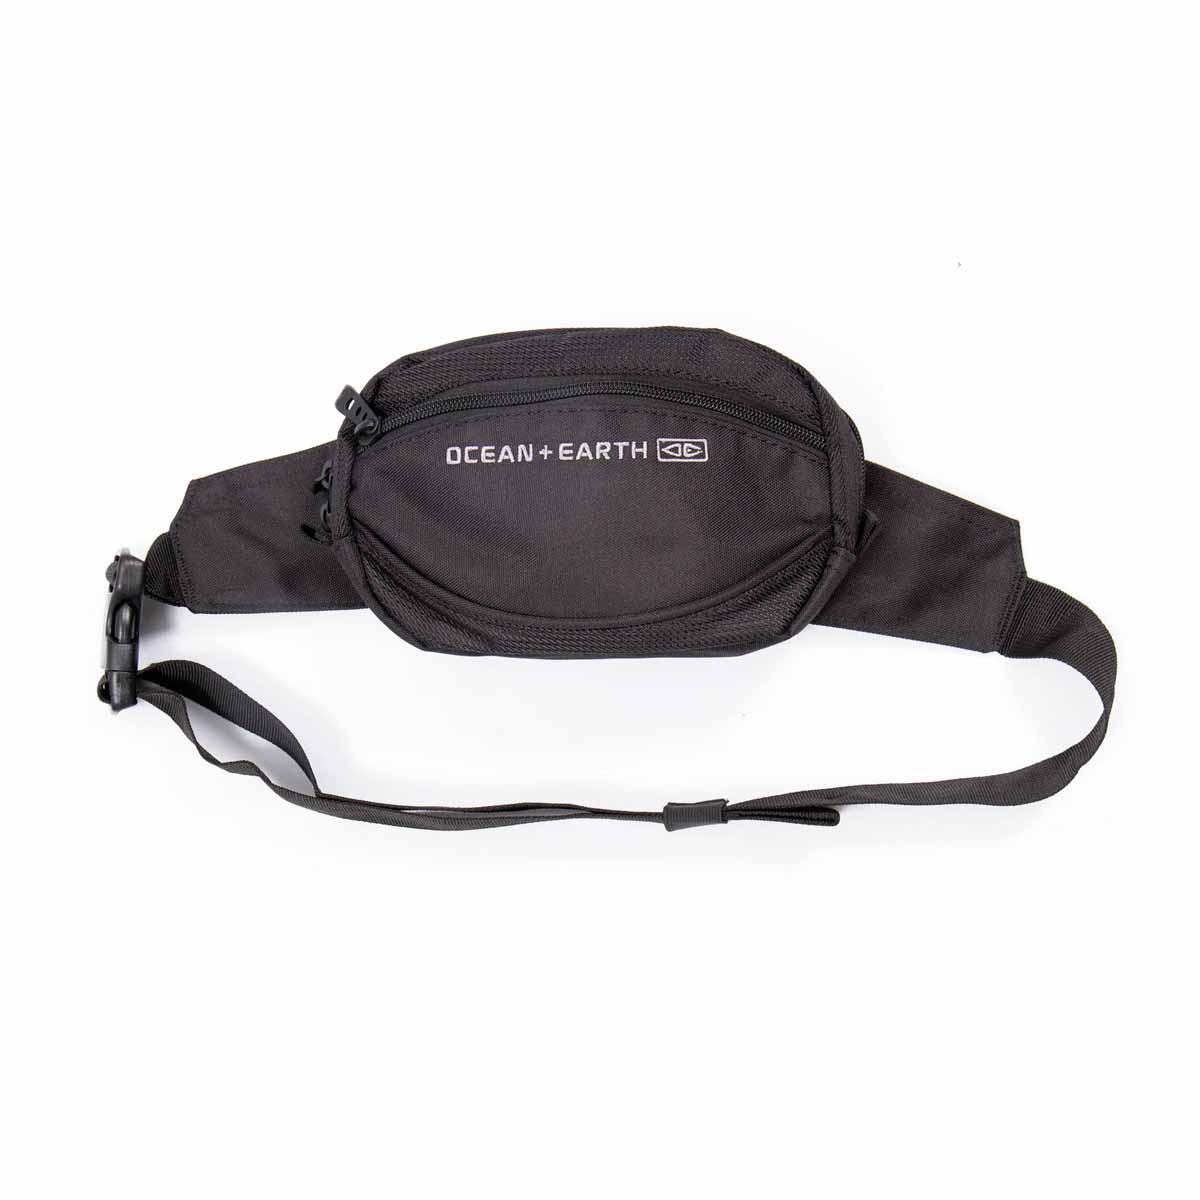 Ocean & Earth GTS Bum Bag – Black